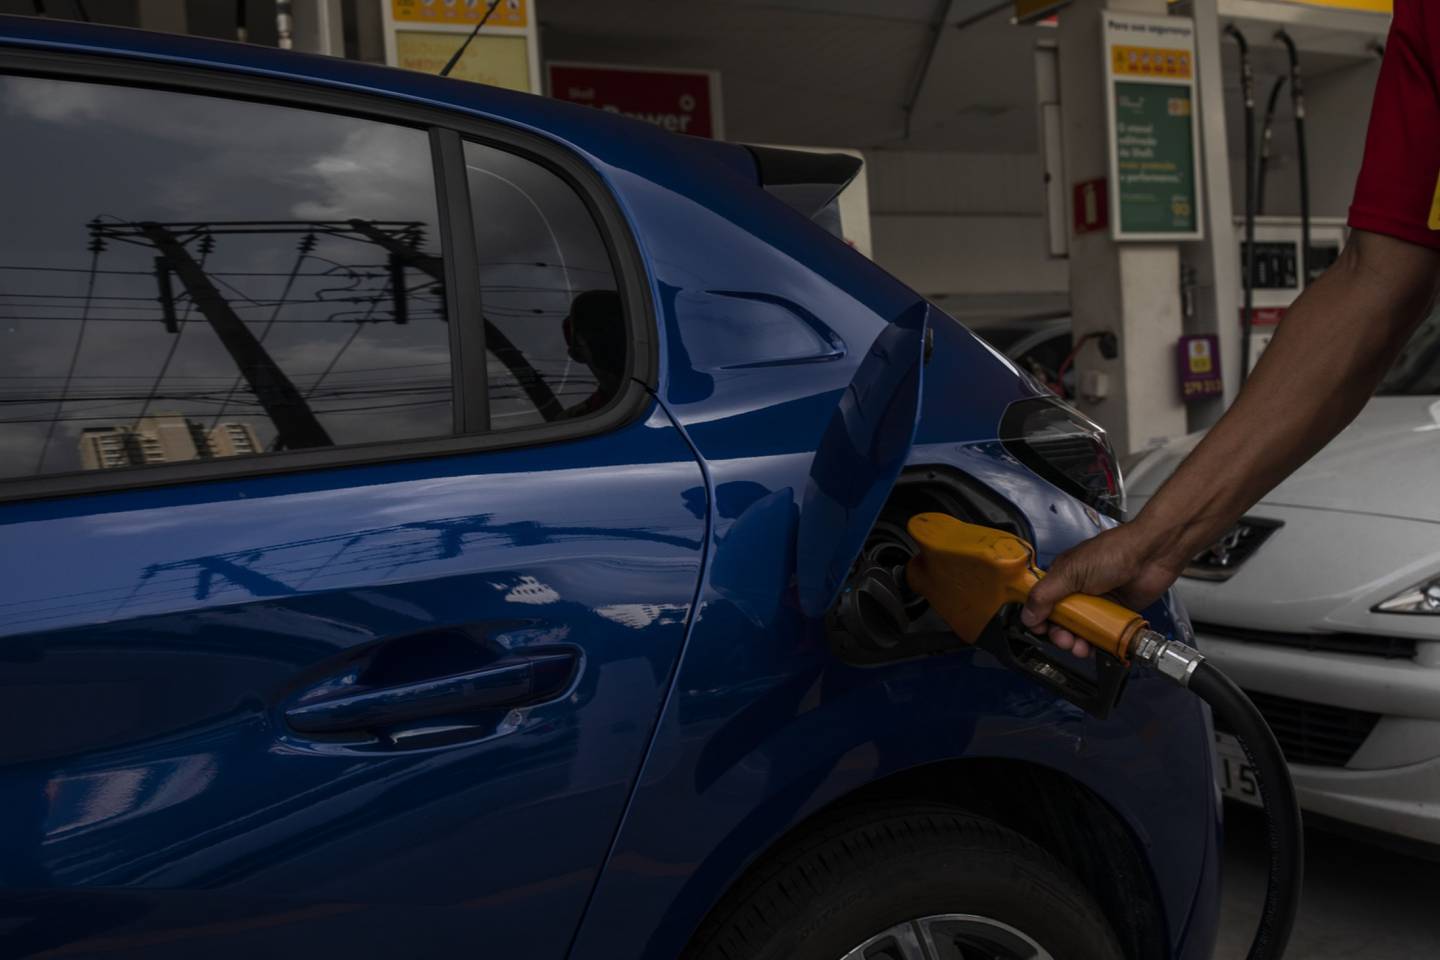 Un trabajador reposta un vehículo en una gasolinera Shell en Sao Paulo, Brasil, el jueves 10 de marzo de 2022. La guerra entre Rusia y Ucrania ha cambiado la dinámica del mercado internacional de combustibles. dfd